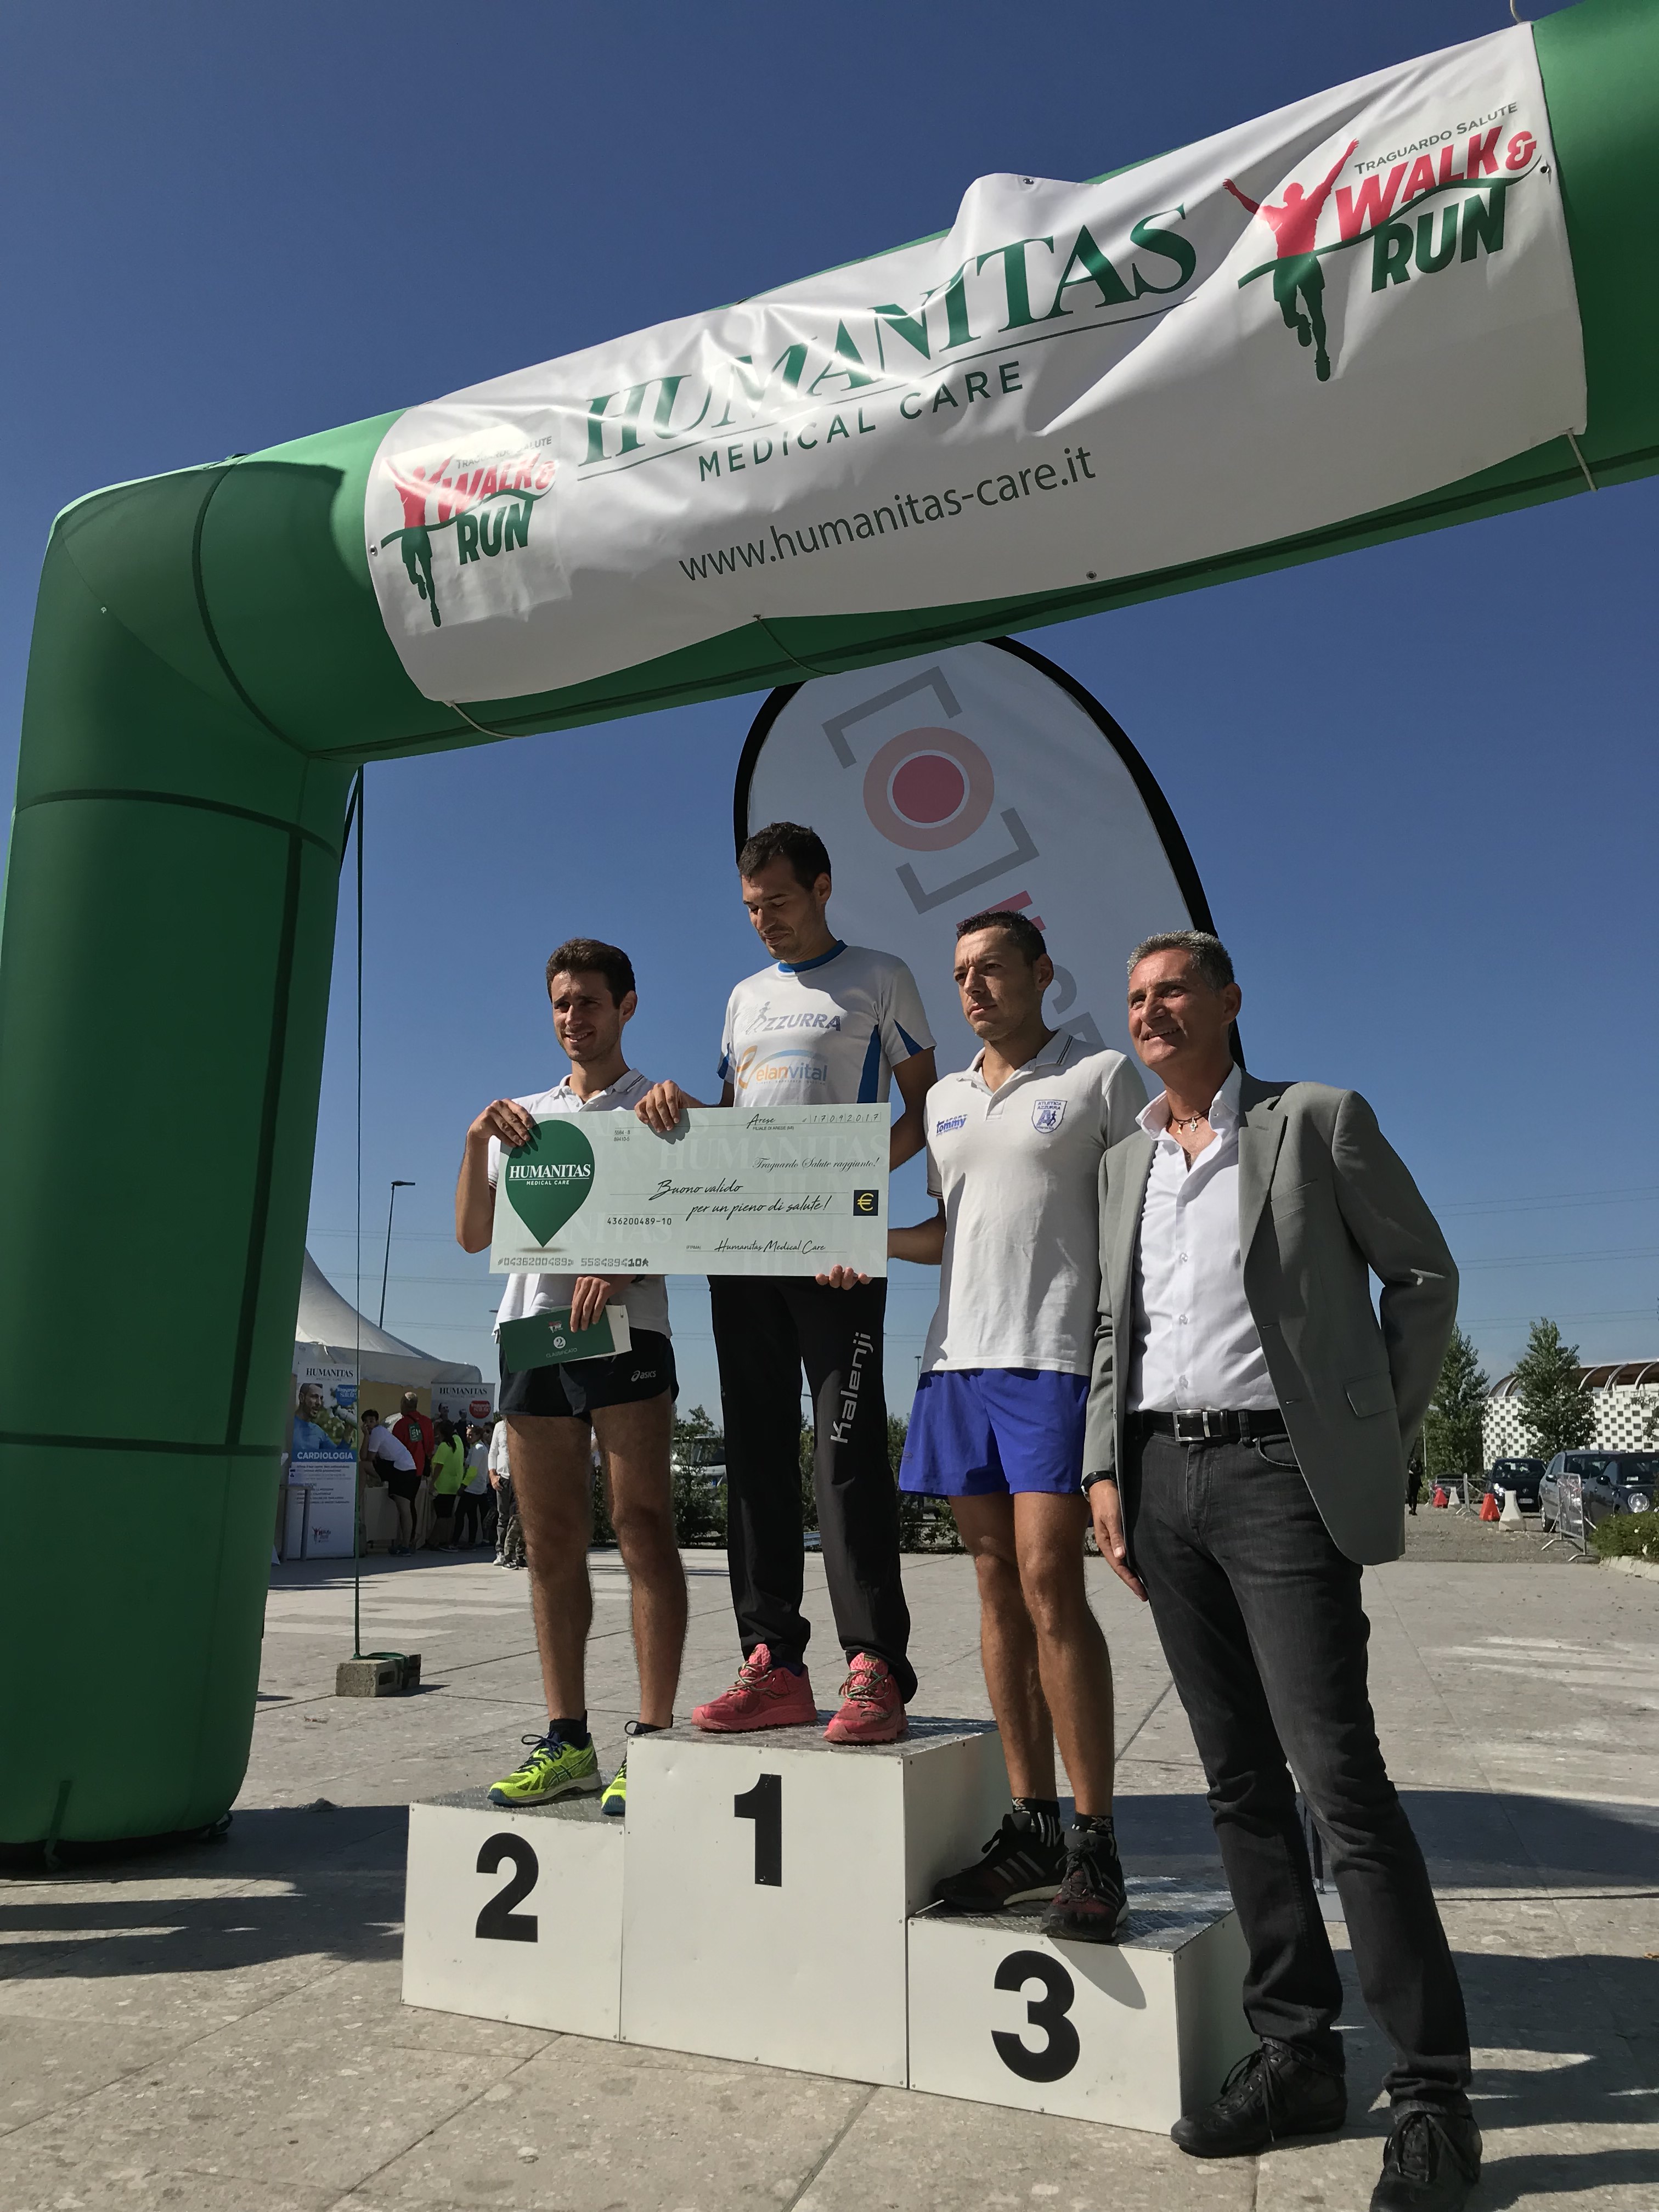 IL CENTRO e HUMANITAS MC - Walk&run_vincitori 8 km maschile